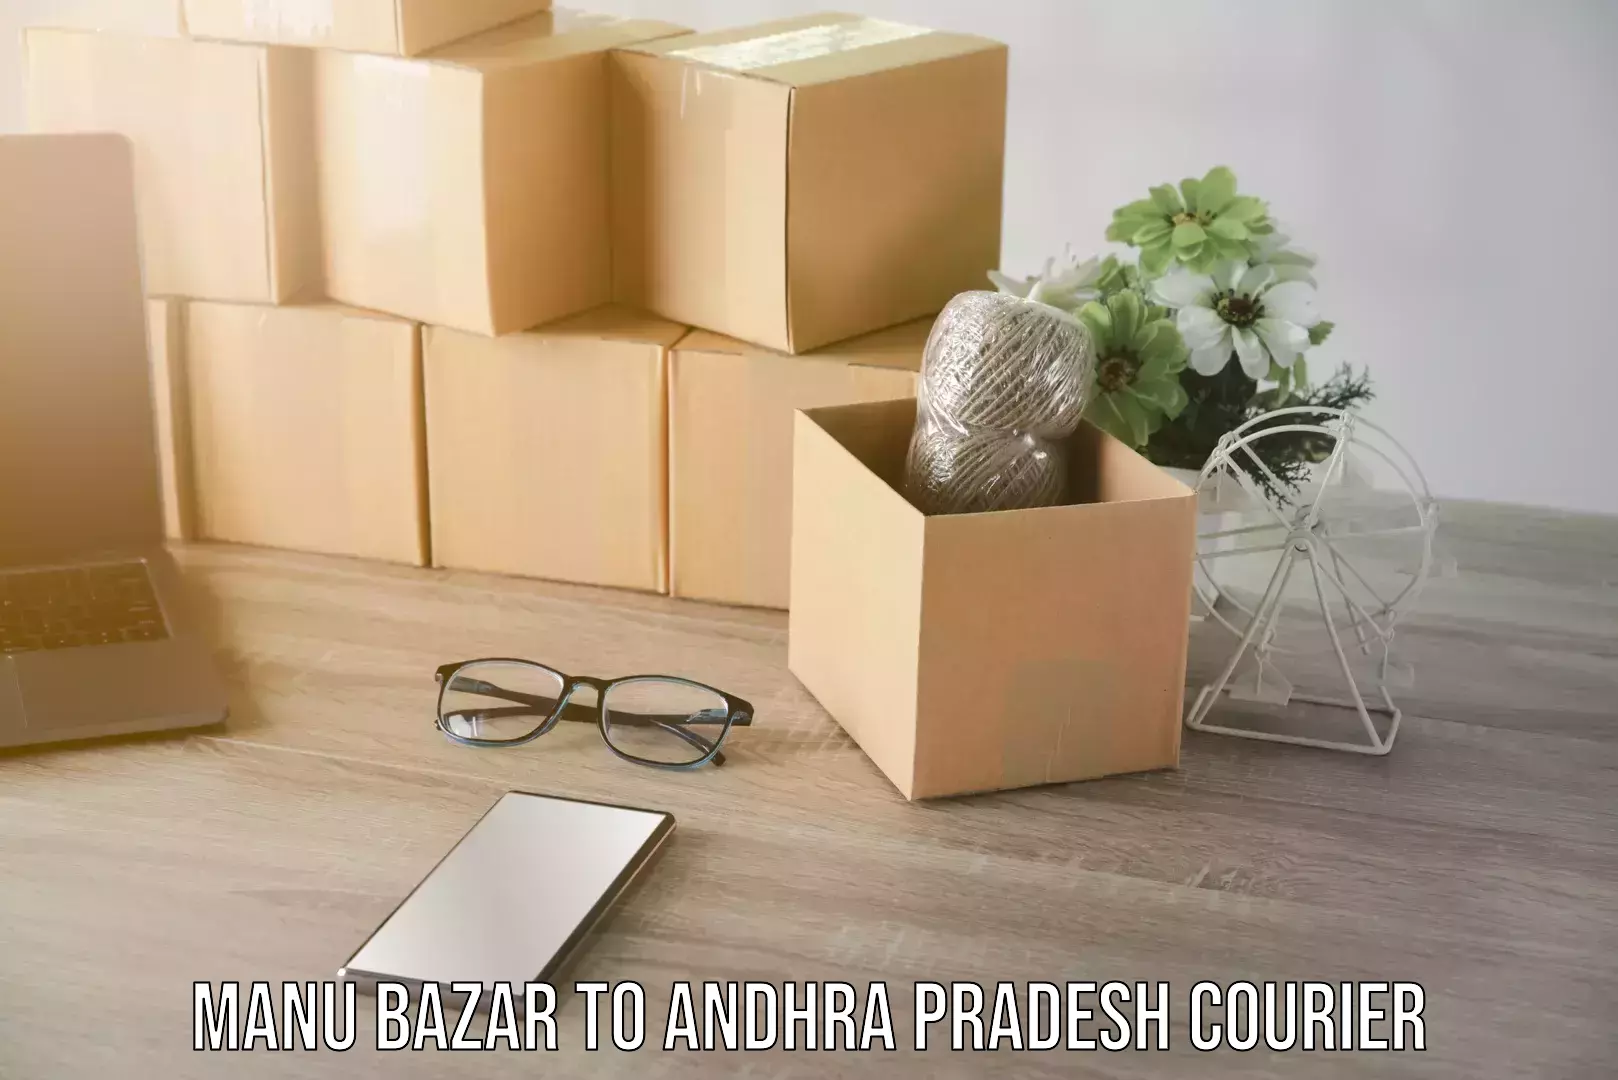 Pharmaceutical courier Manu Bazar to Andhra Pradesh